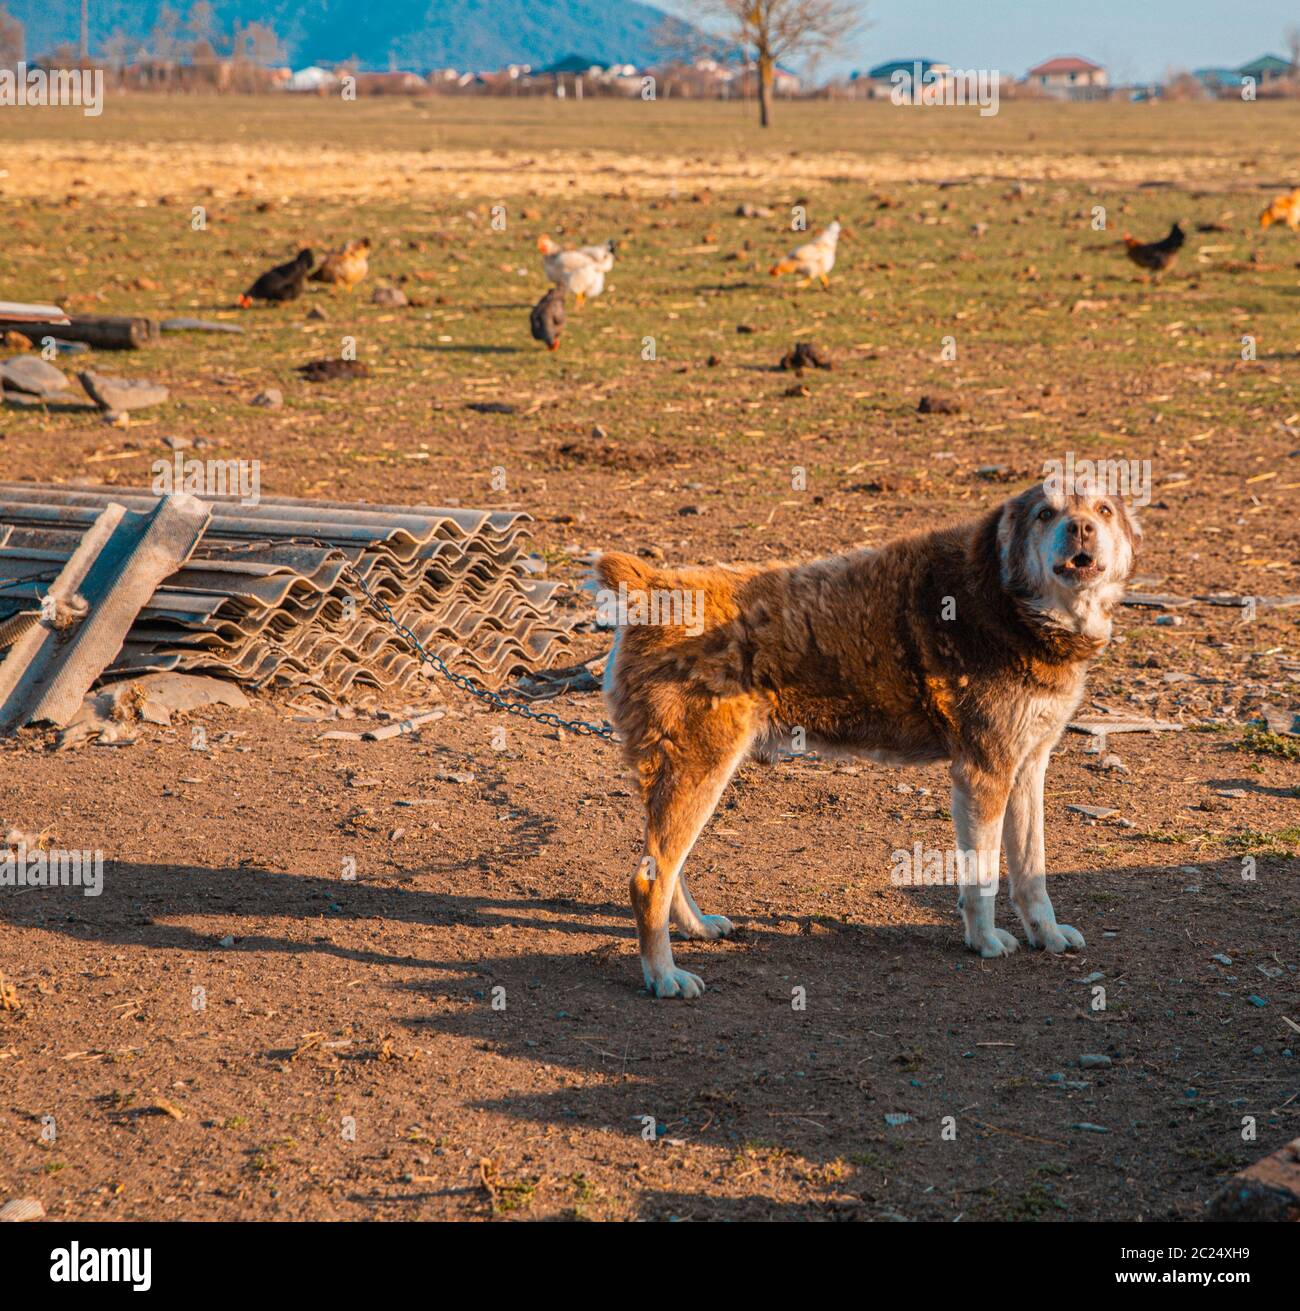 Un chien domestique dans les terres agricoles avec d'autres animaux Banque D'Images